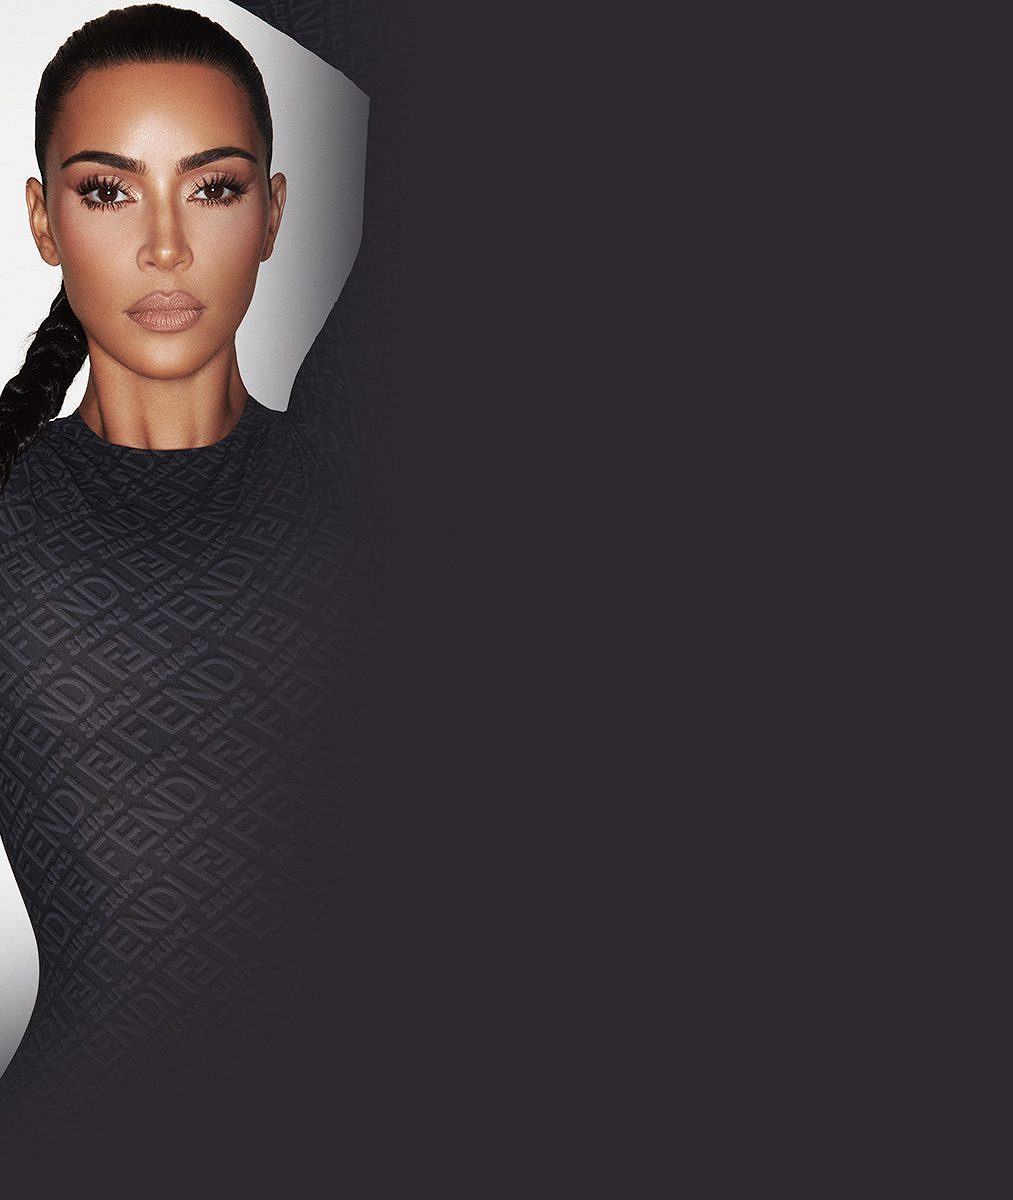 Už nemohou být roztomilejší: Kim Kardashian se pochlubila zamilovanými snímky s Petem Davidsonem